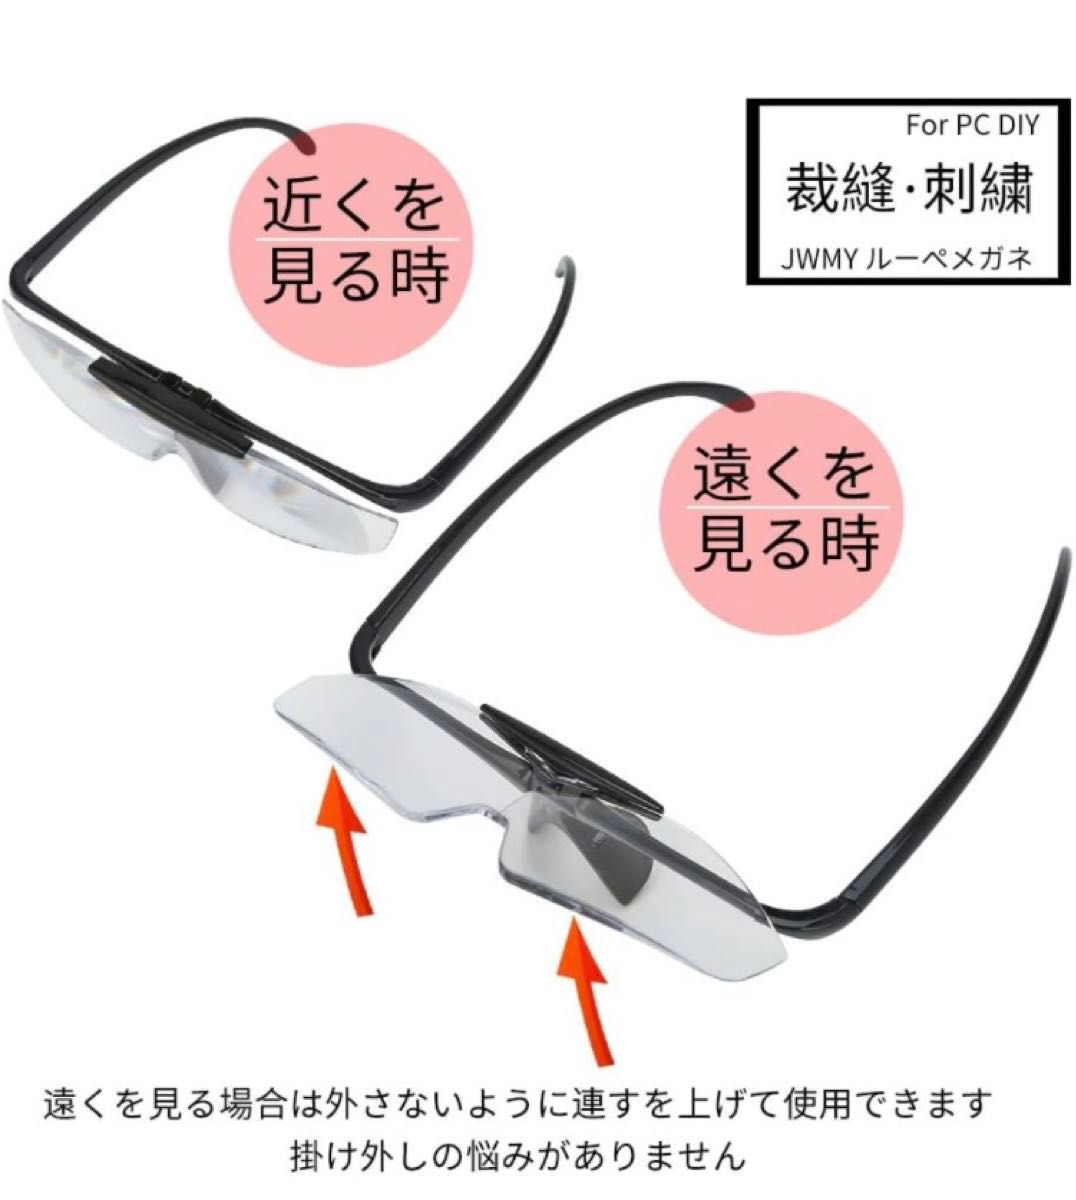 JWMY ルーペメガネ メガネ型拡大鏡 メガネの上から掛けられる はっきり見える